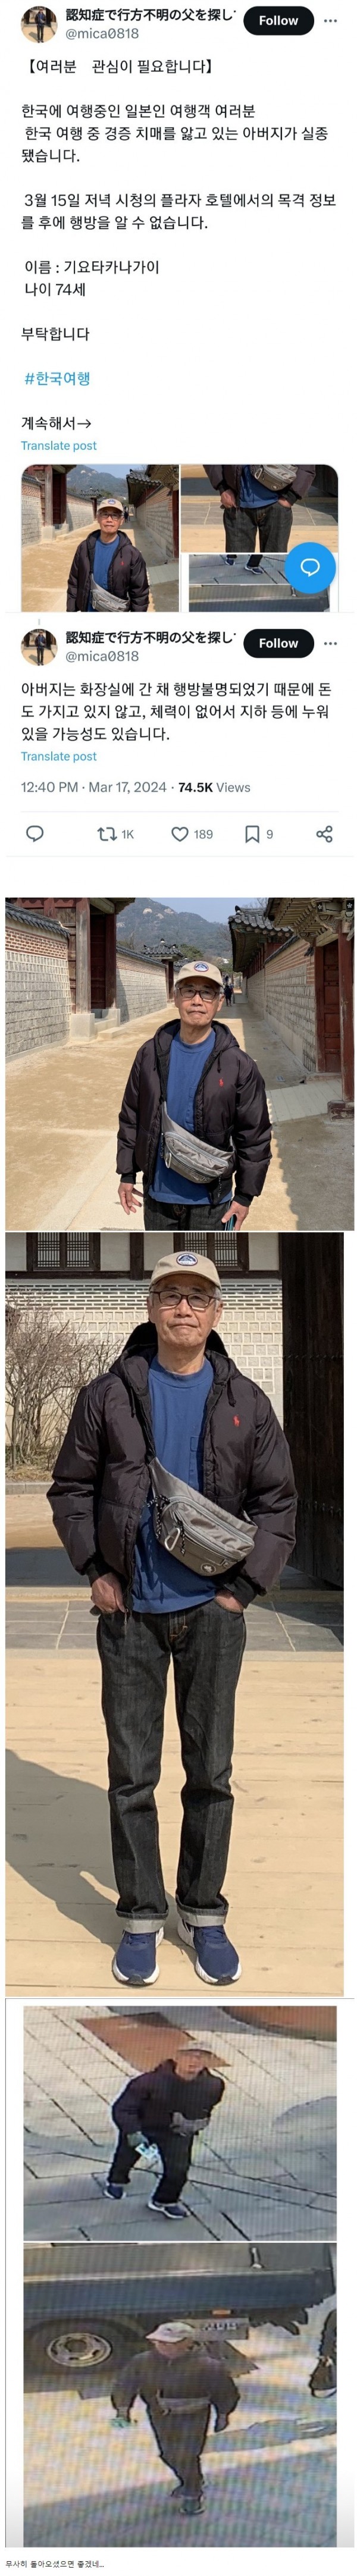 한국에서 치매 앓는 아버지가 실종 됐다는 일본인